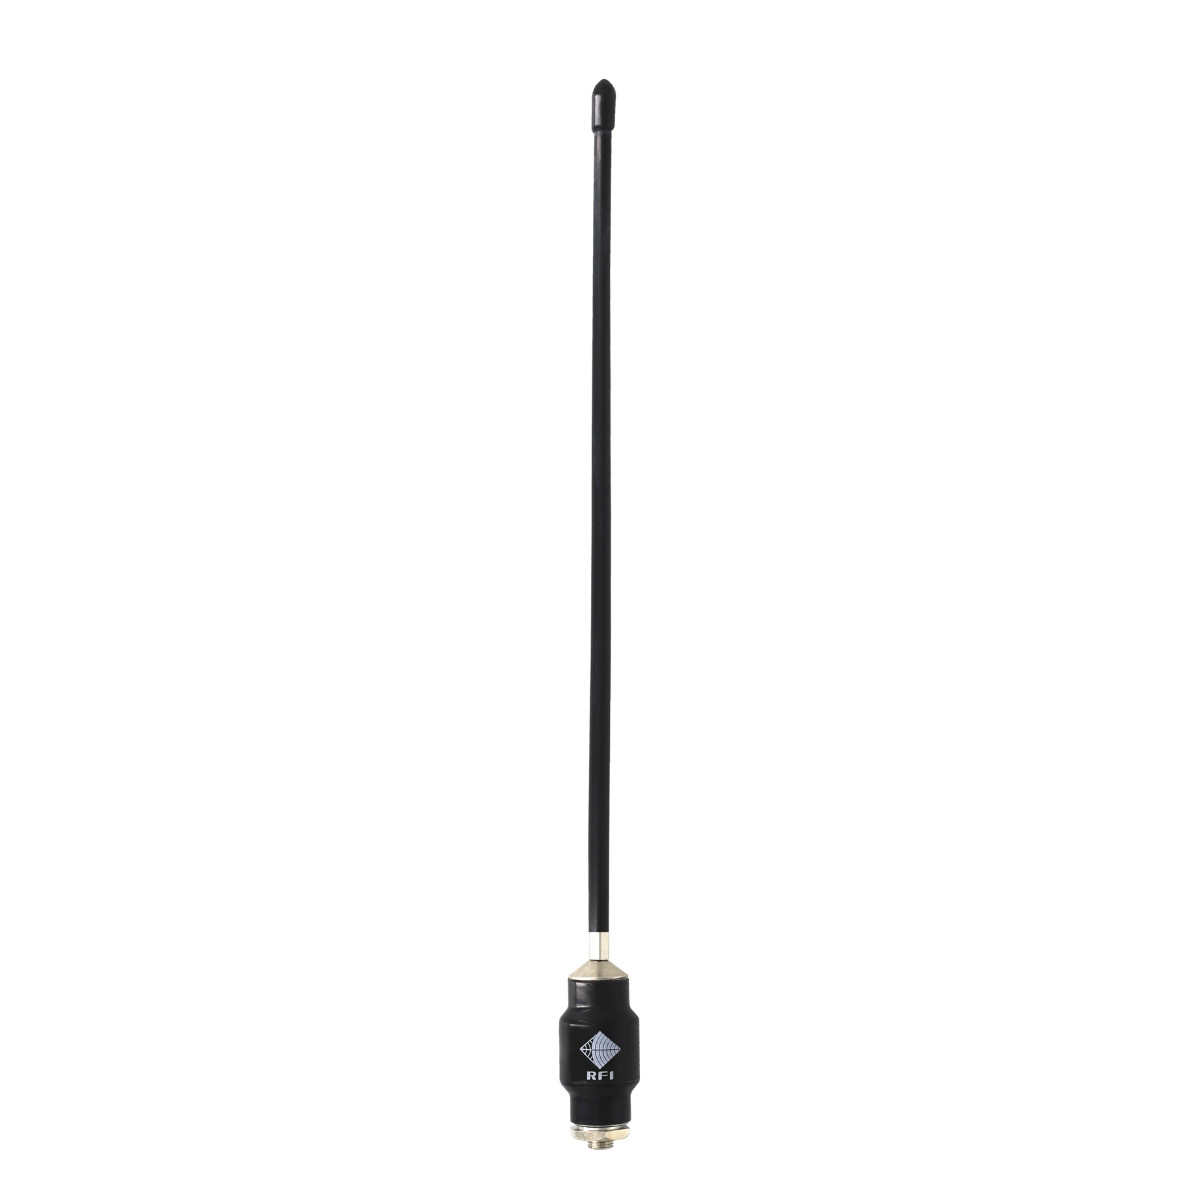 ANT:UHF Mobile RFI CD51-68-70 450-520MHz